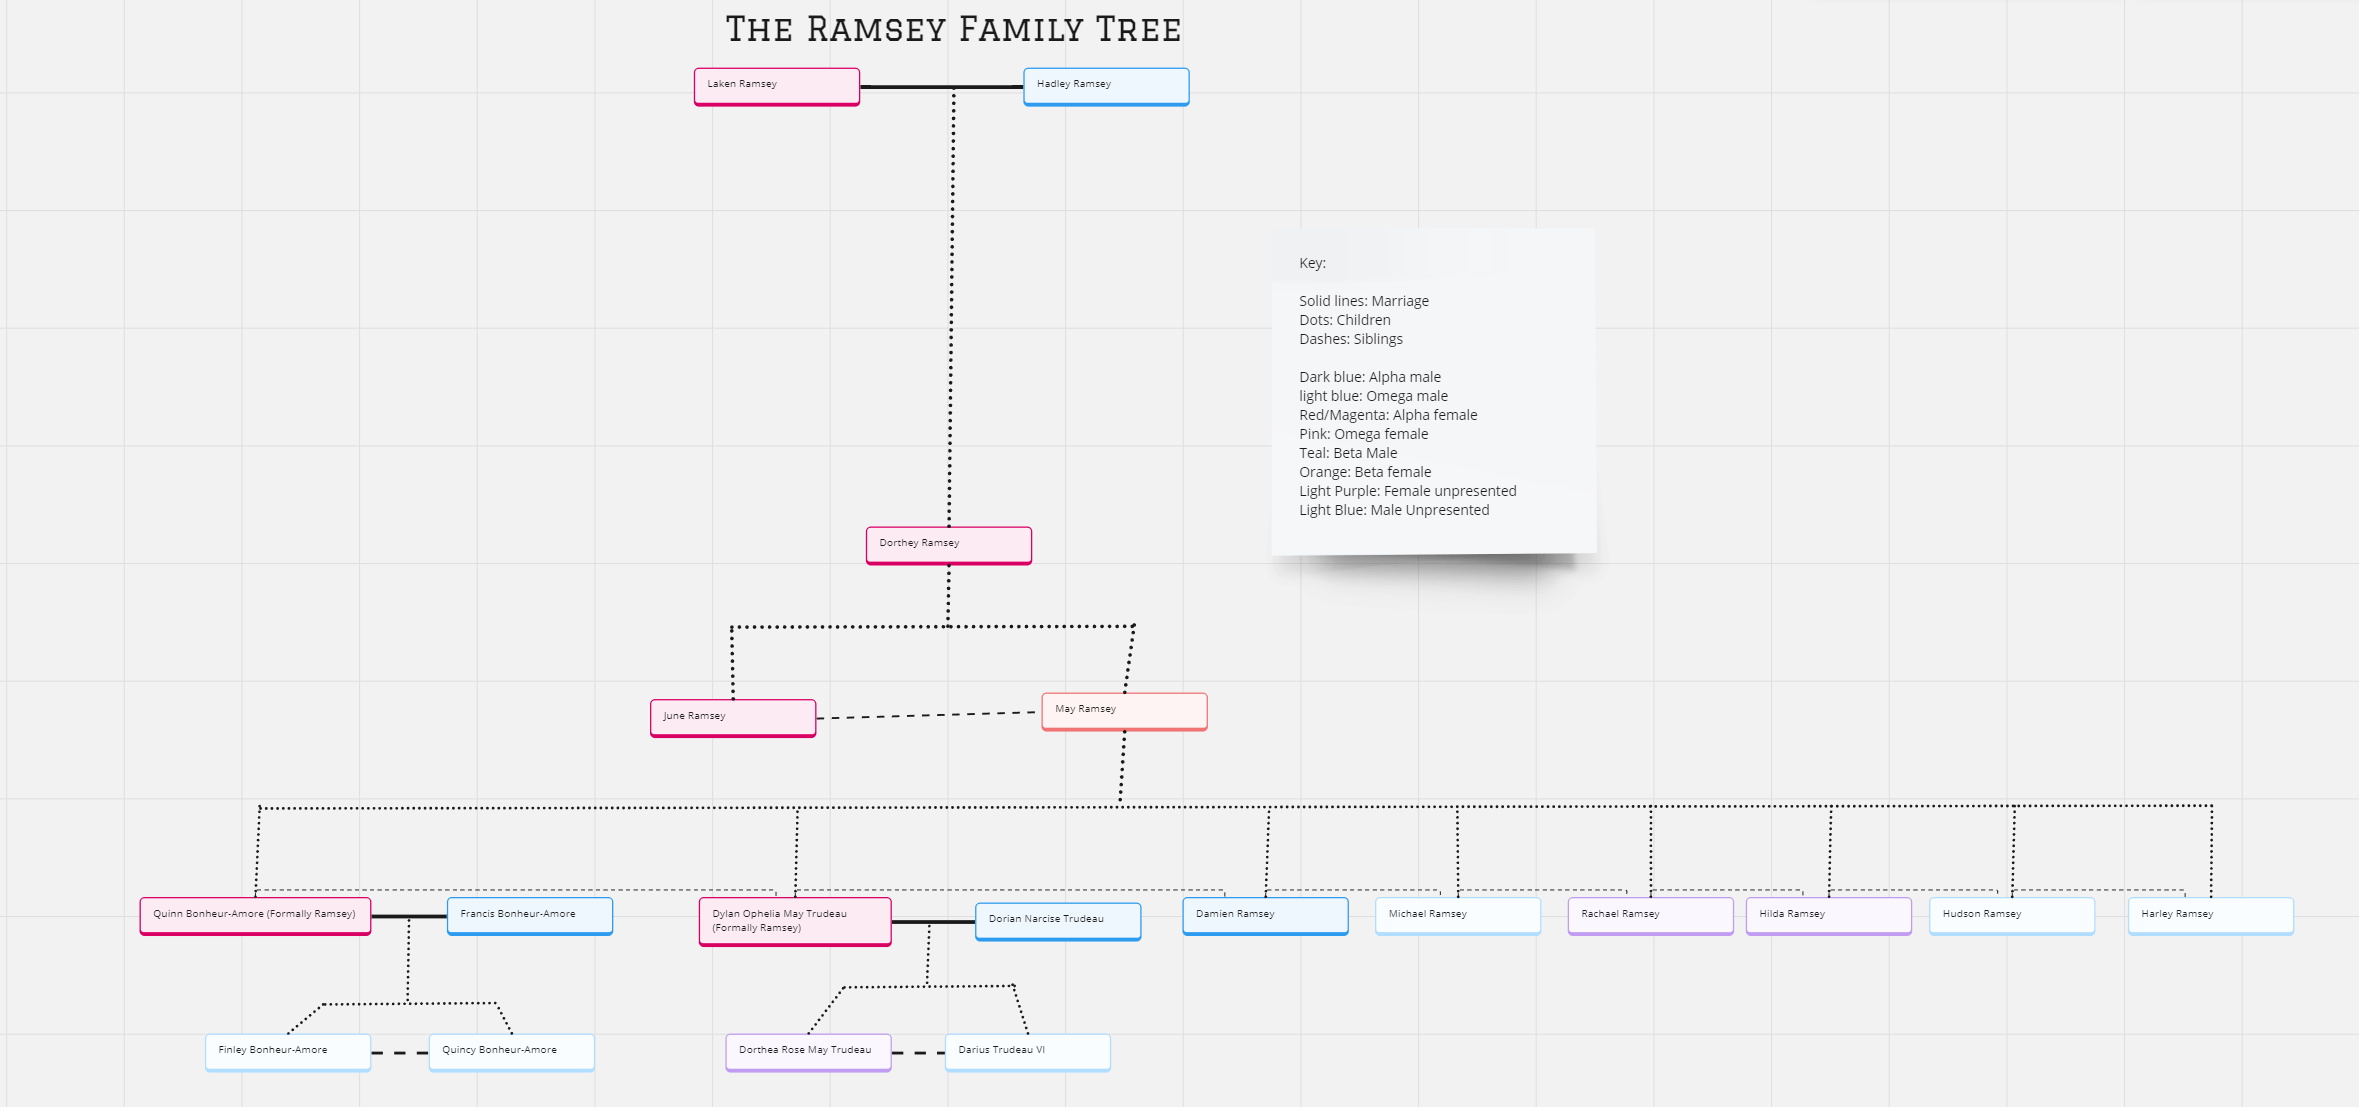 The Ramsey Family Tree